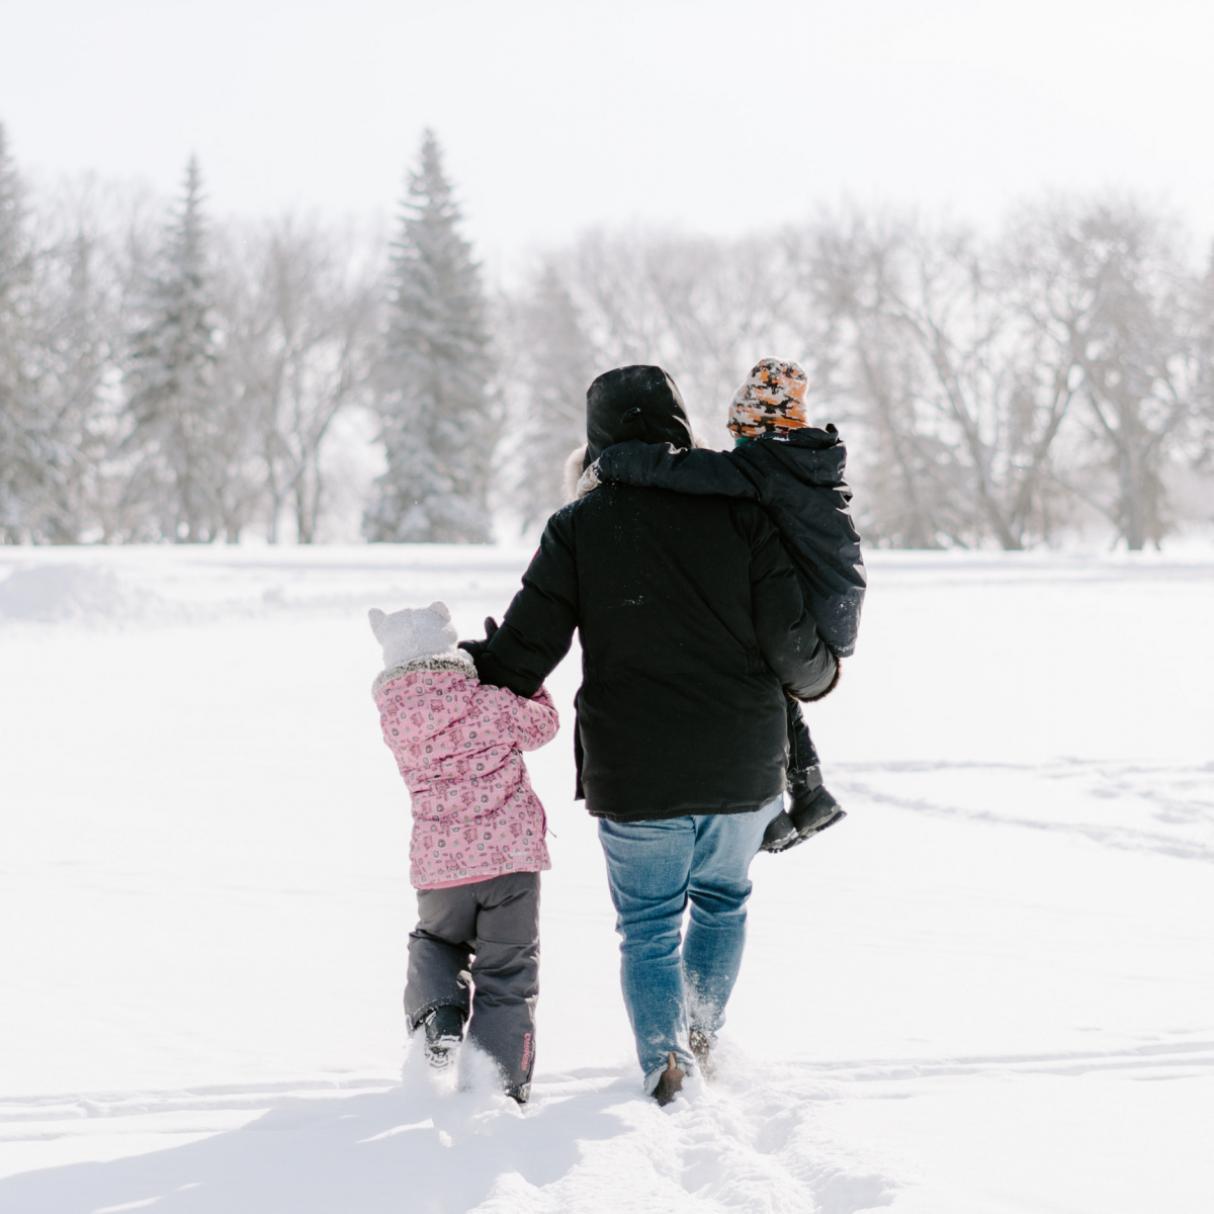 A family in snow gear walks across a snowy field